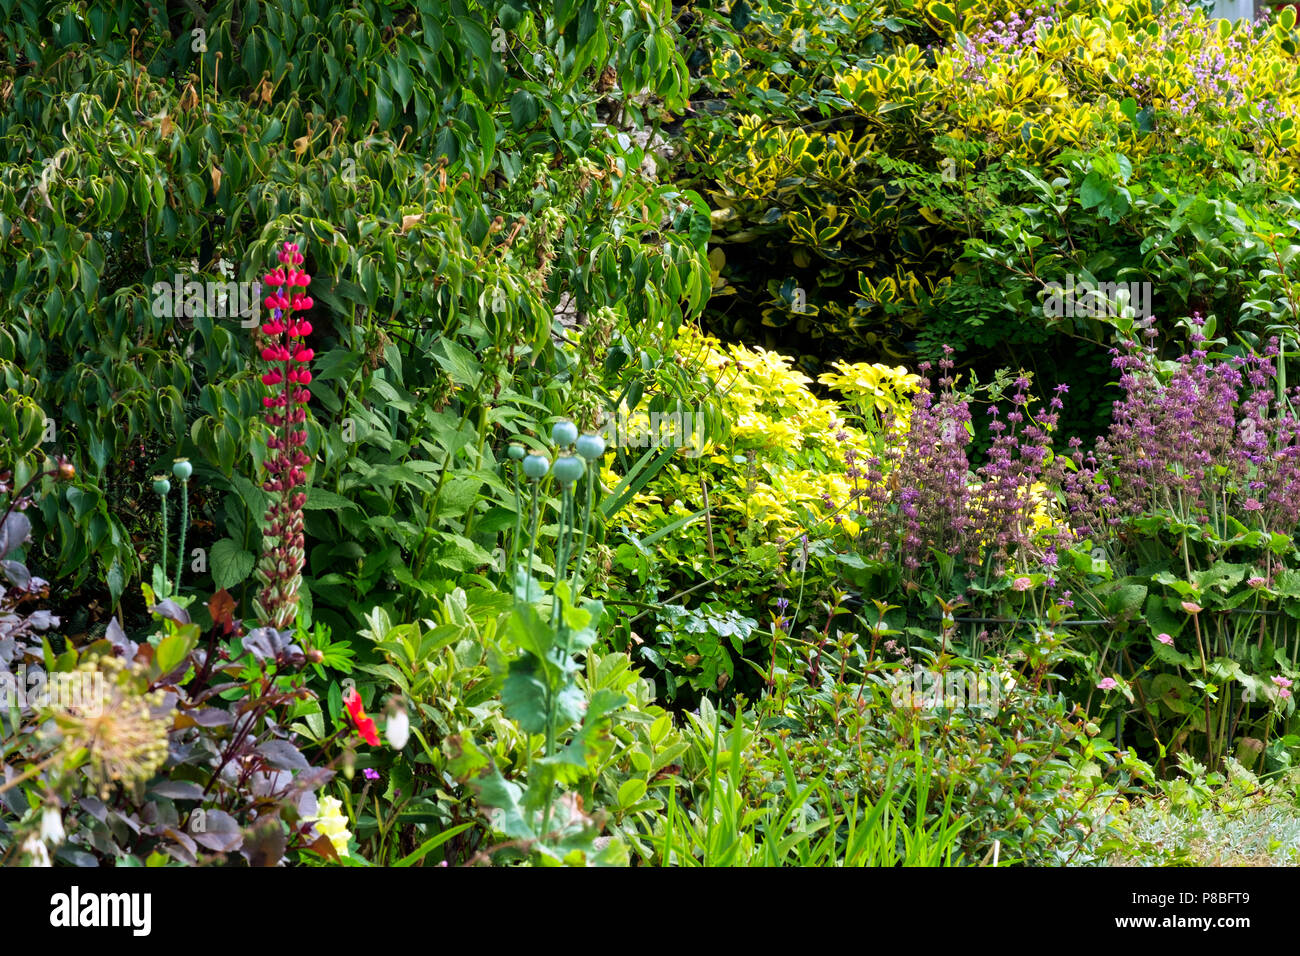 A colouful English summer garden flower border Stock Photo